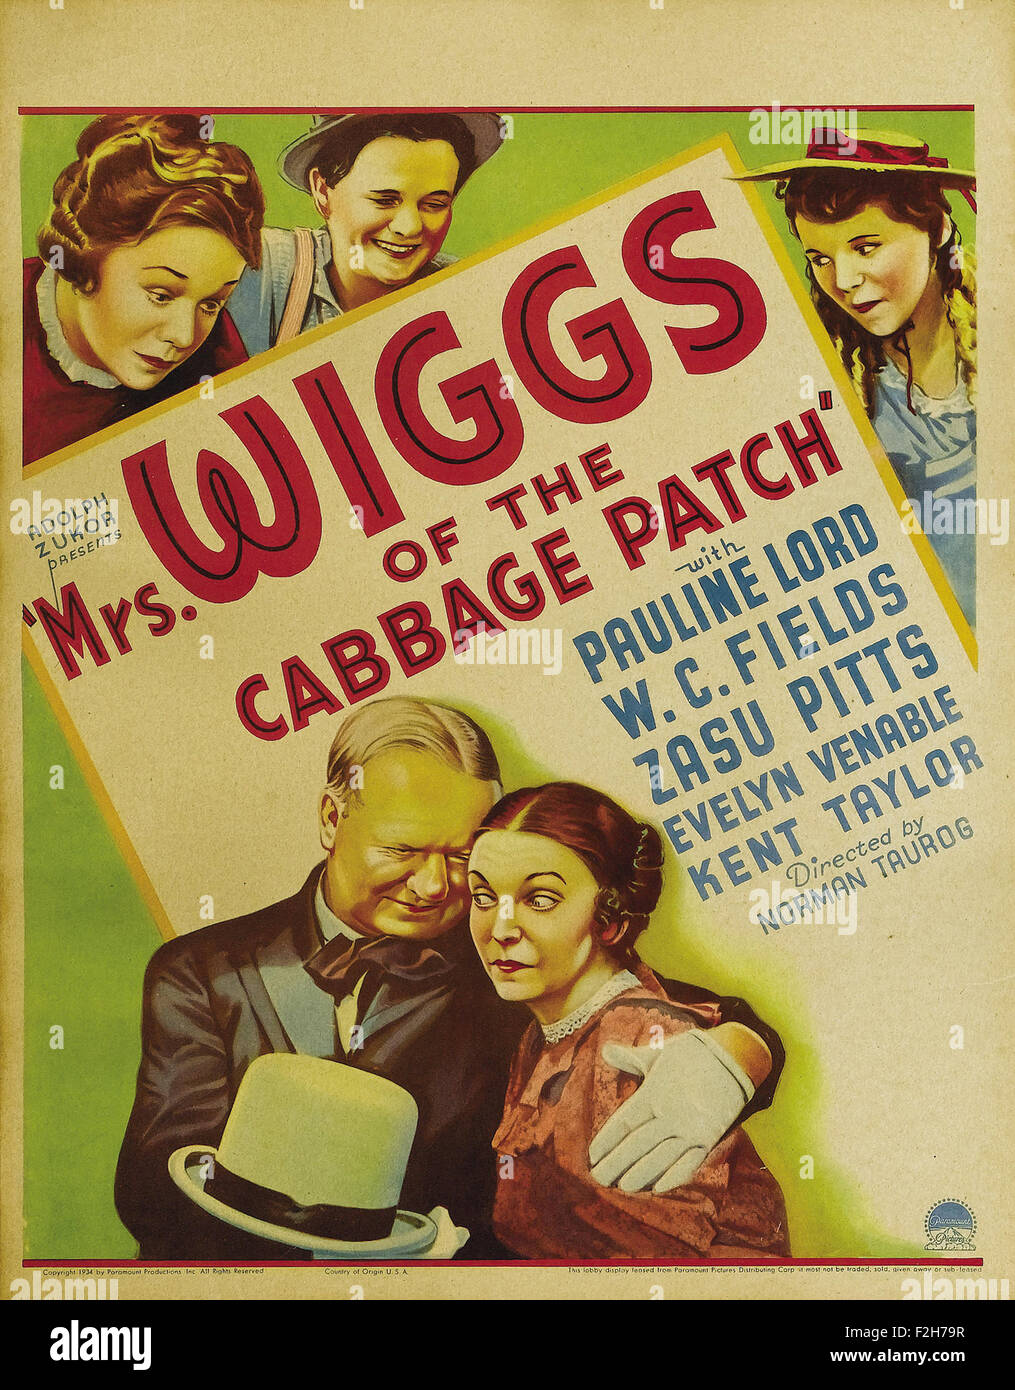 La Sra. Wiggs de Las Cabbage Patch (1934) - póster de película Foto de stock